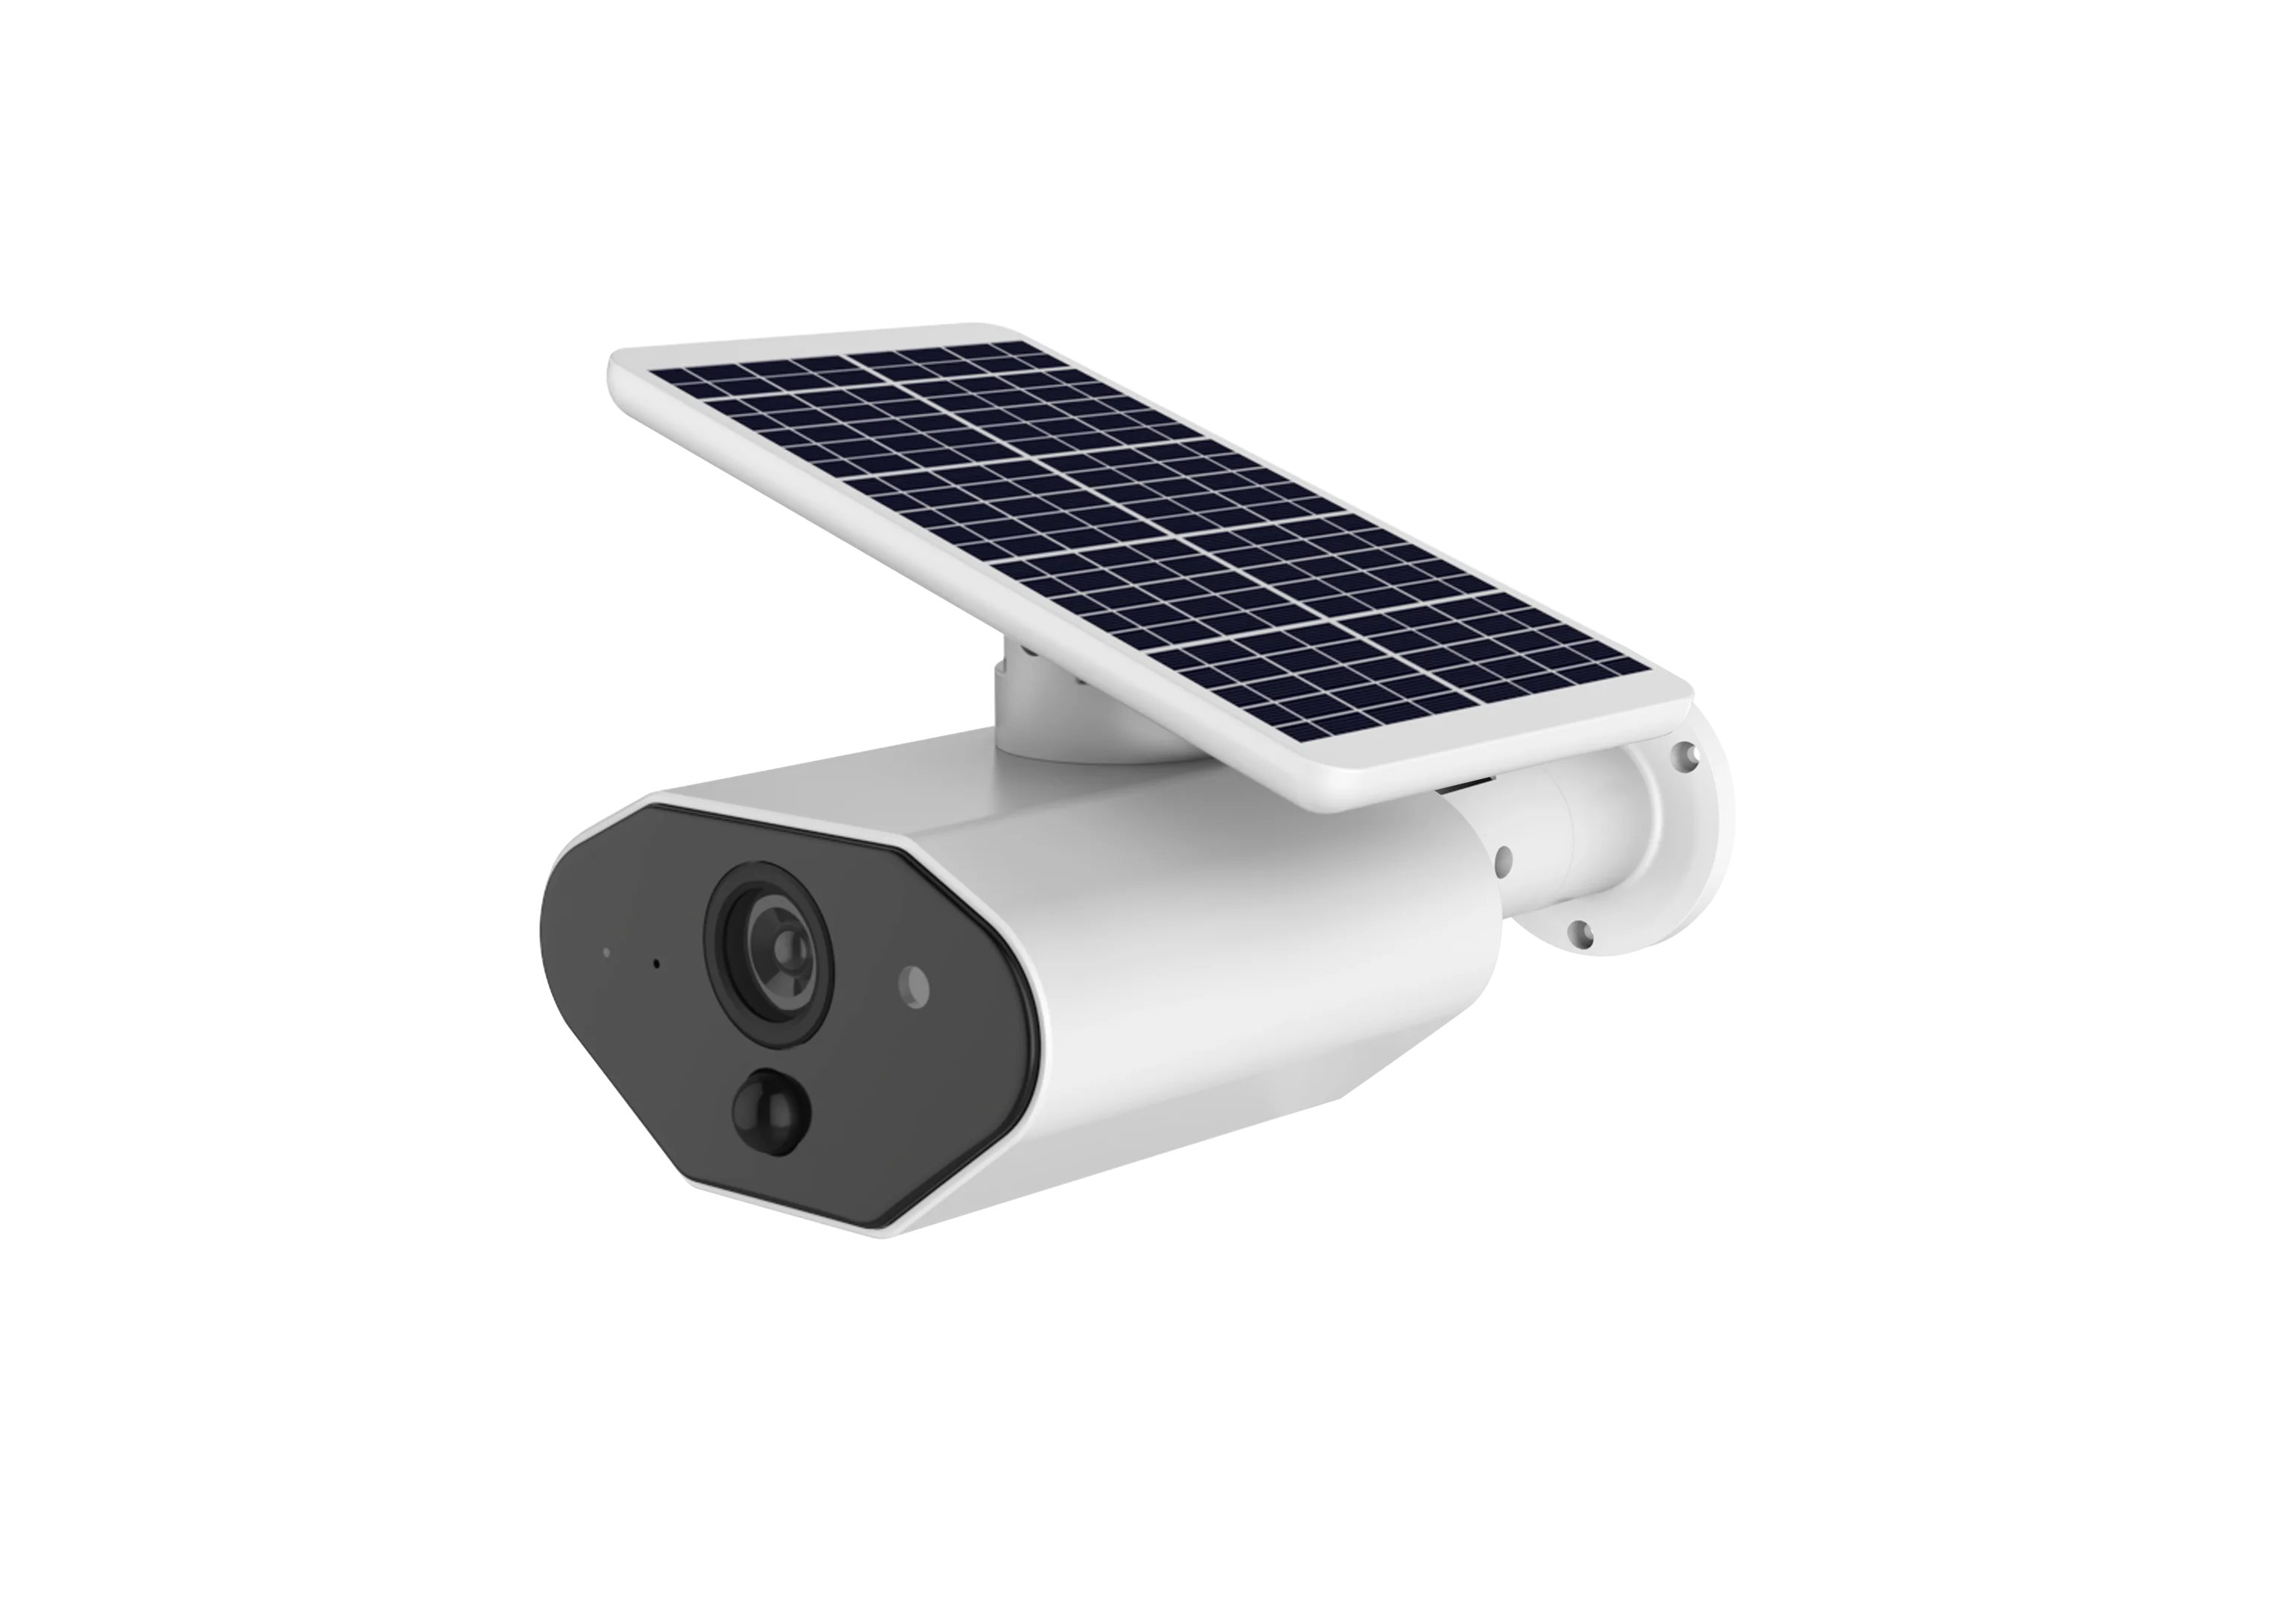 CTVISON наружная Солнечная WiFi беспроводная домашняя камера безопасности, перезаряжаемая батарея, IP66 водонепроницаемая, работает с Alexa